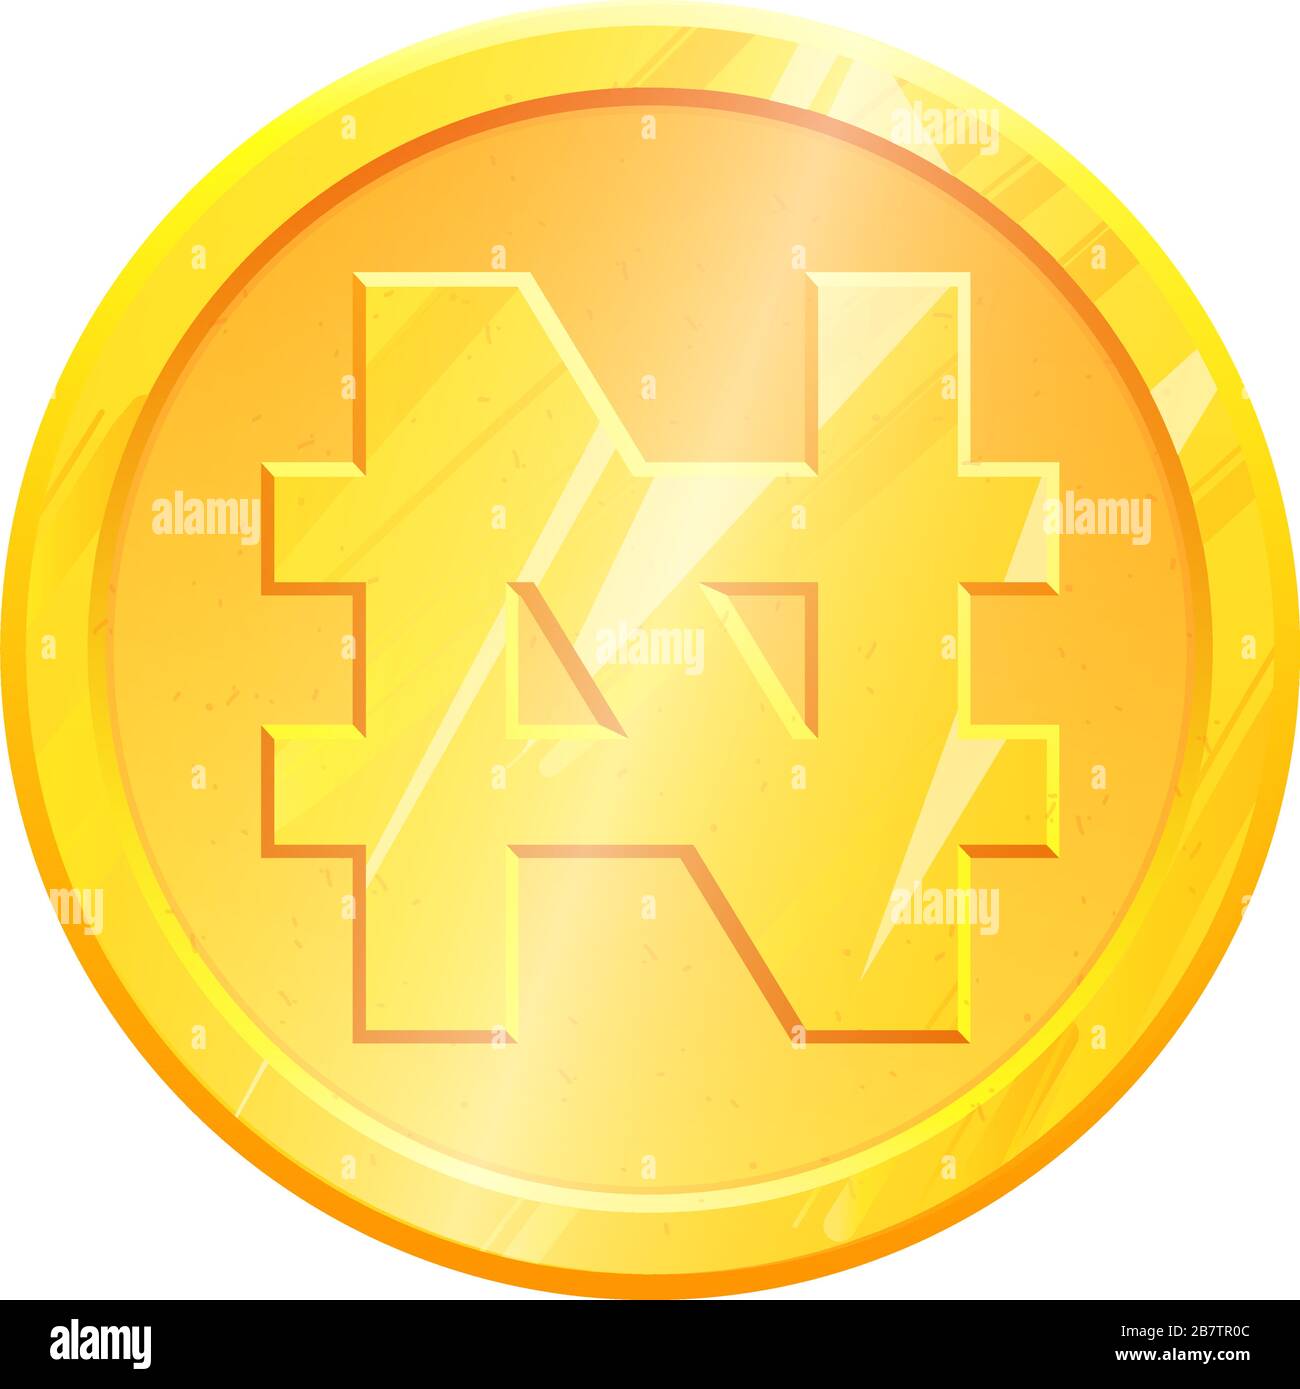 Simbolo NGN della moneta della naira d'oro su sfondo bianco. Concetto di investimento finanziario. Cambio valuta nigeriana Money banking illustrazione. Guadagni di reddito di affari. Vettore di azione di segno finanziario. Illustrazione Vettoriale